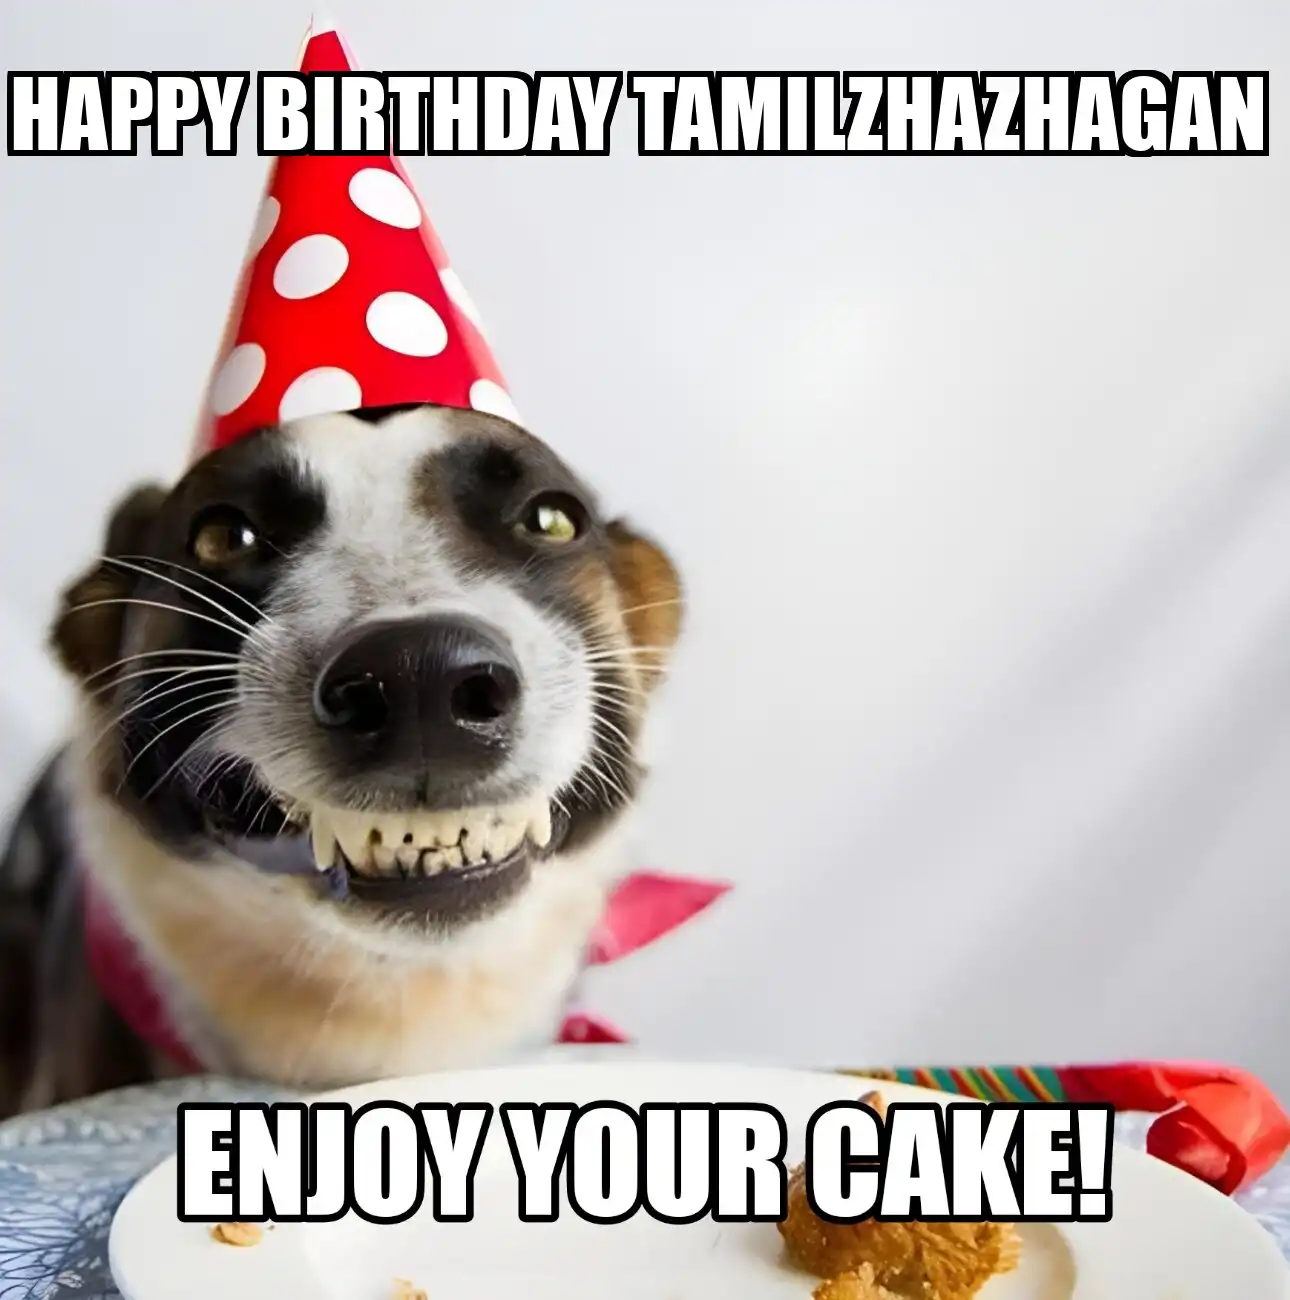 Happy Birthday Tamilzhazhagan Enjoy Your Cake Dog Meme